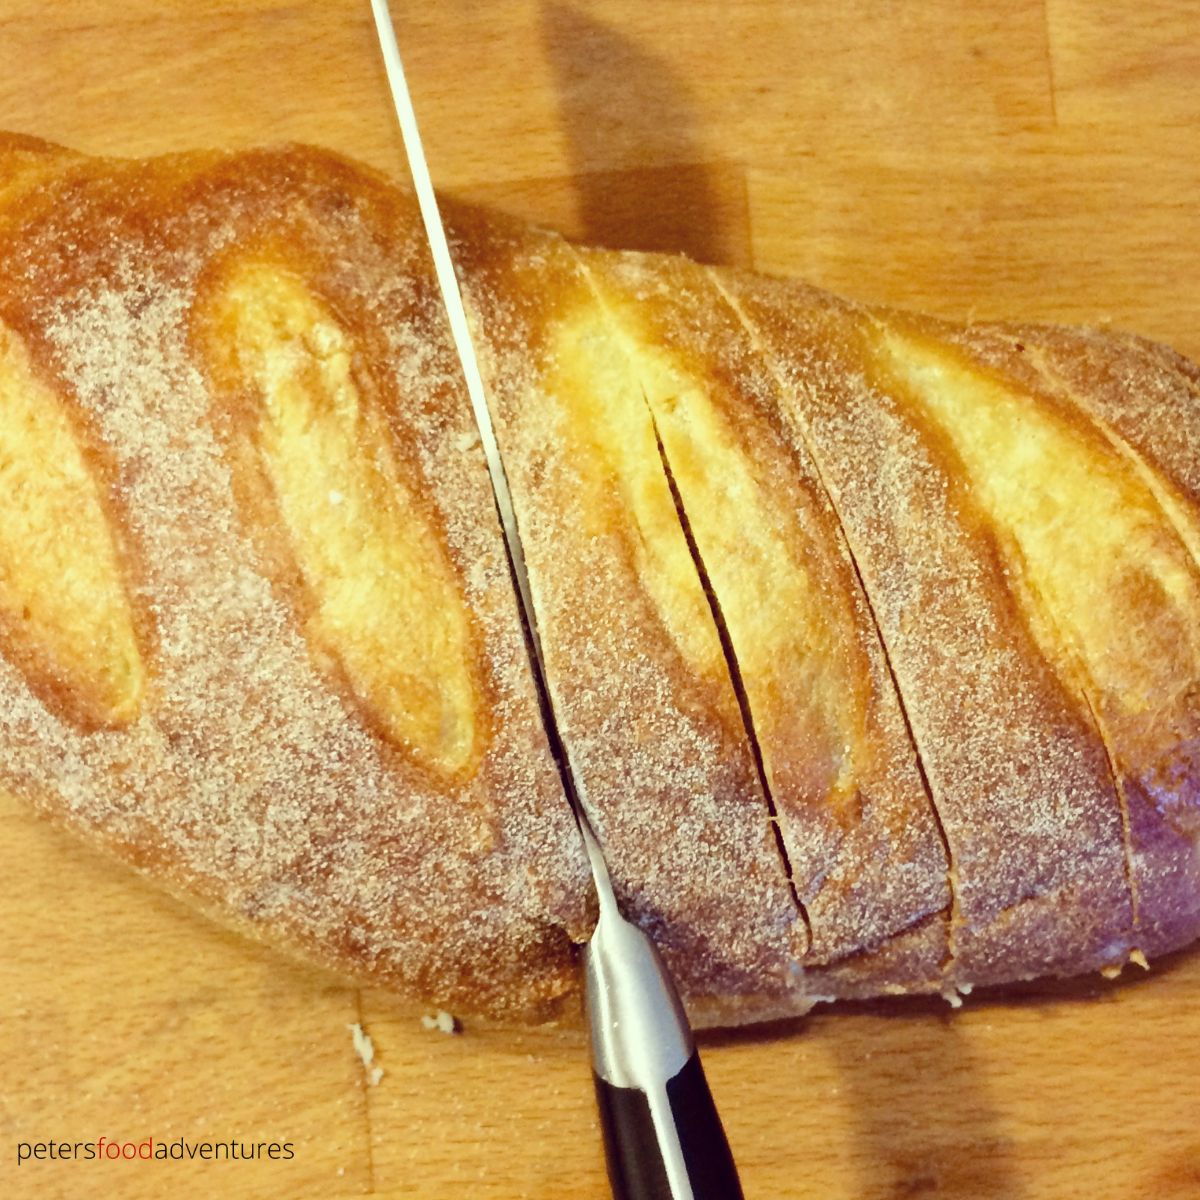 slicing bread loaf